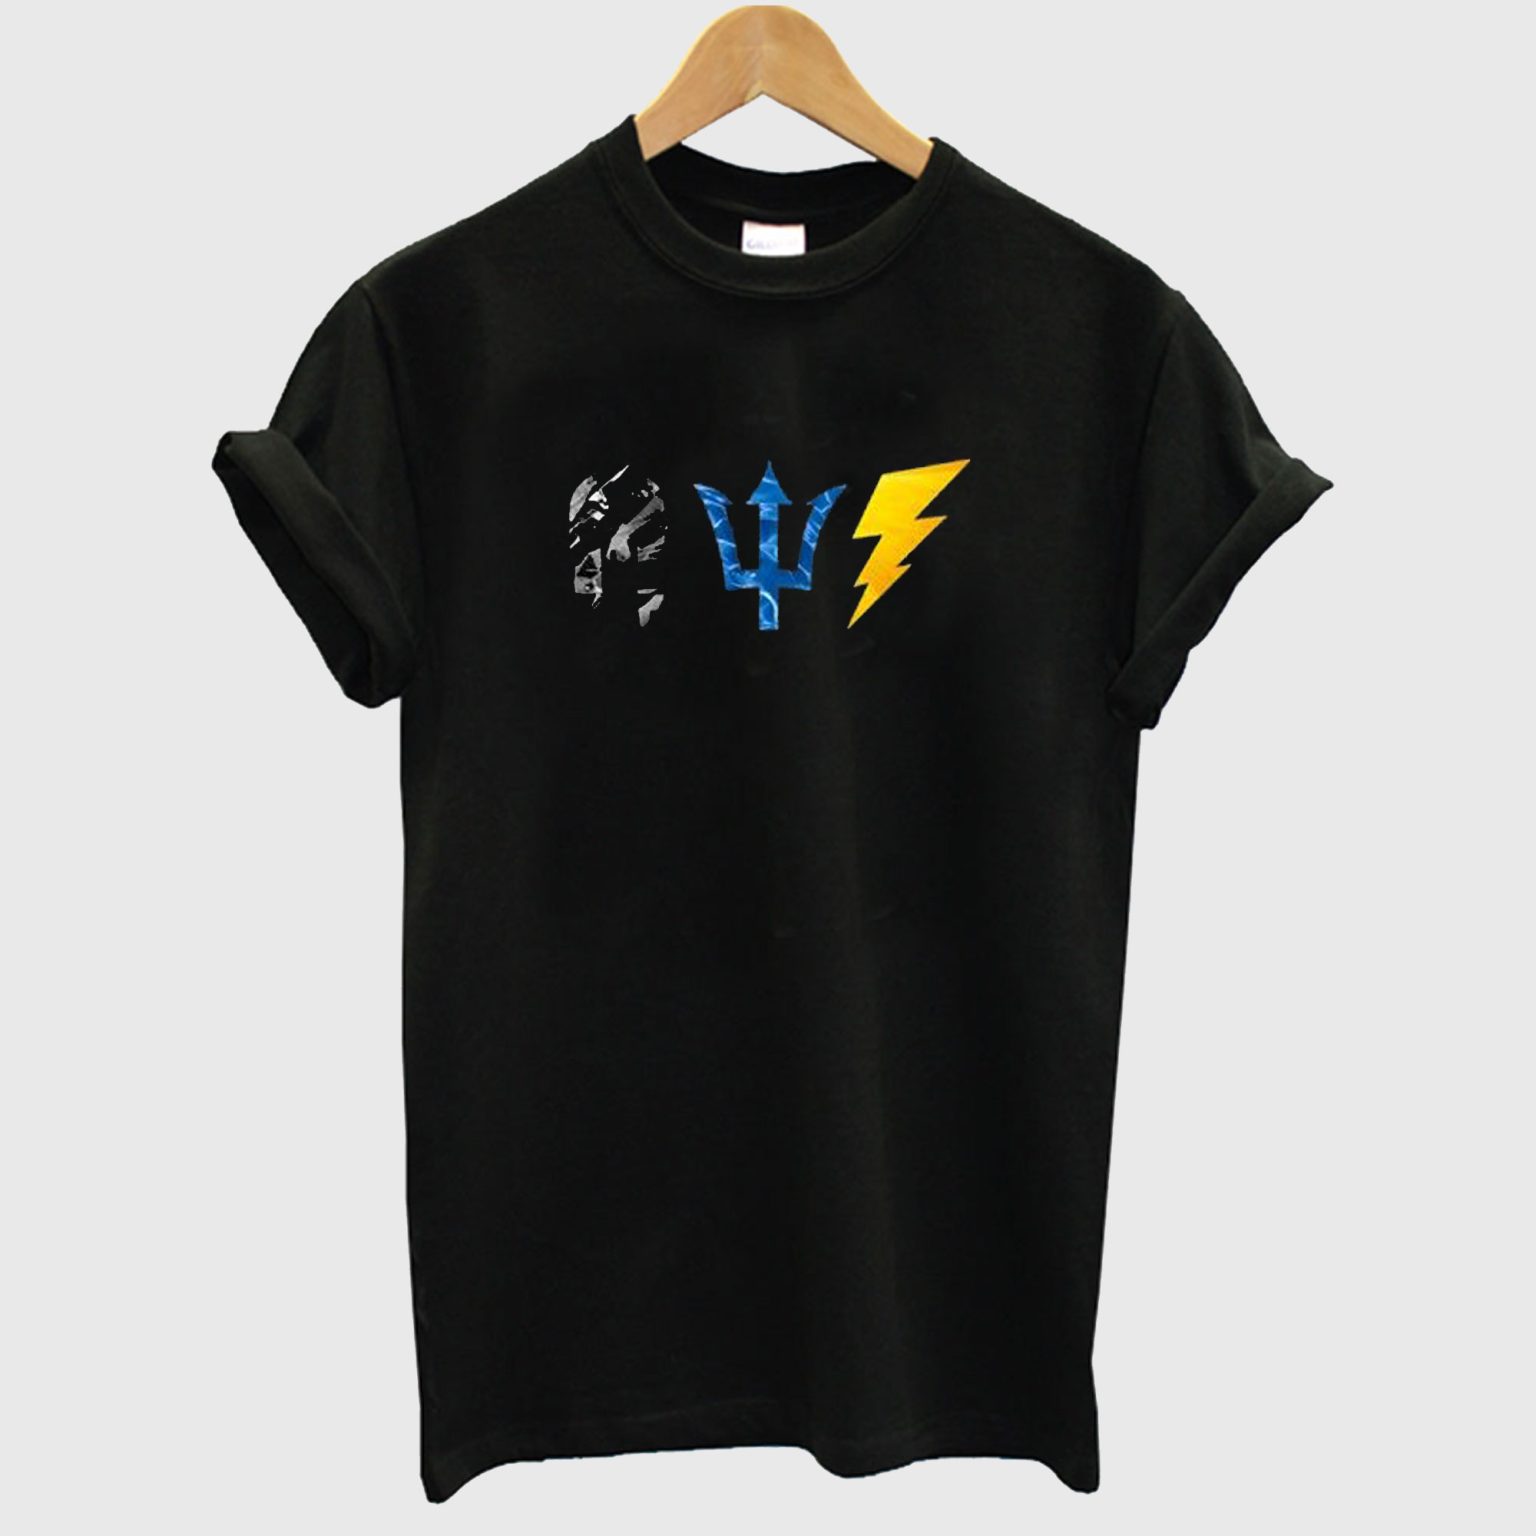 Hades Poseidon Zeus Symbols T-Shirt